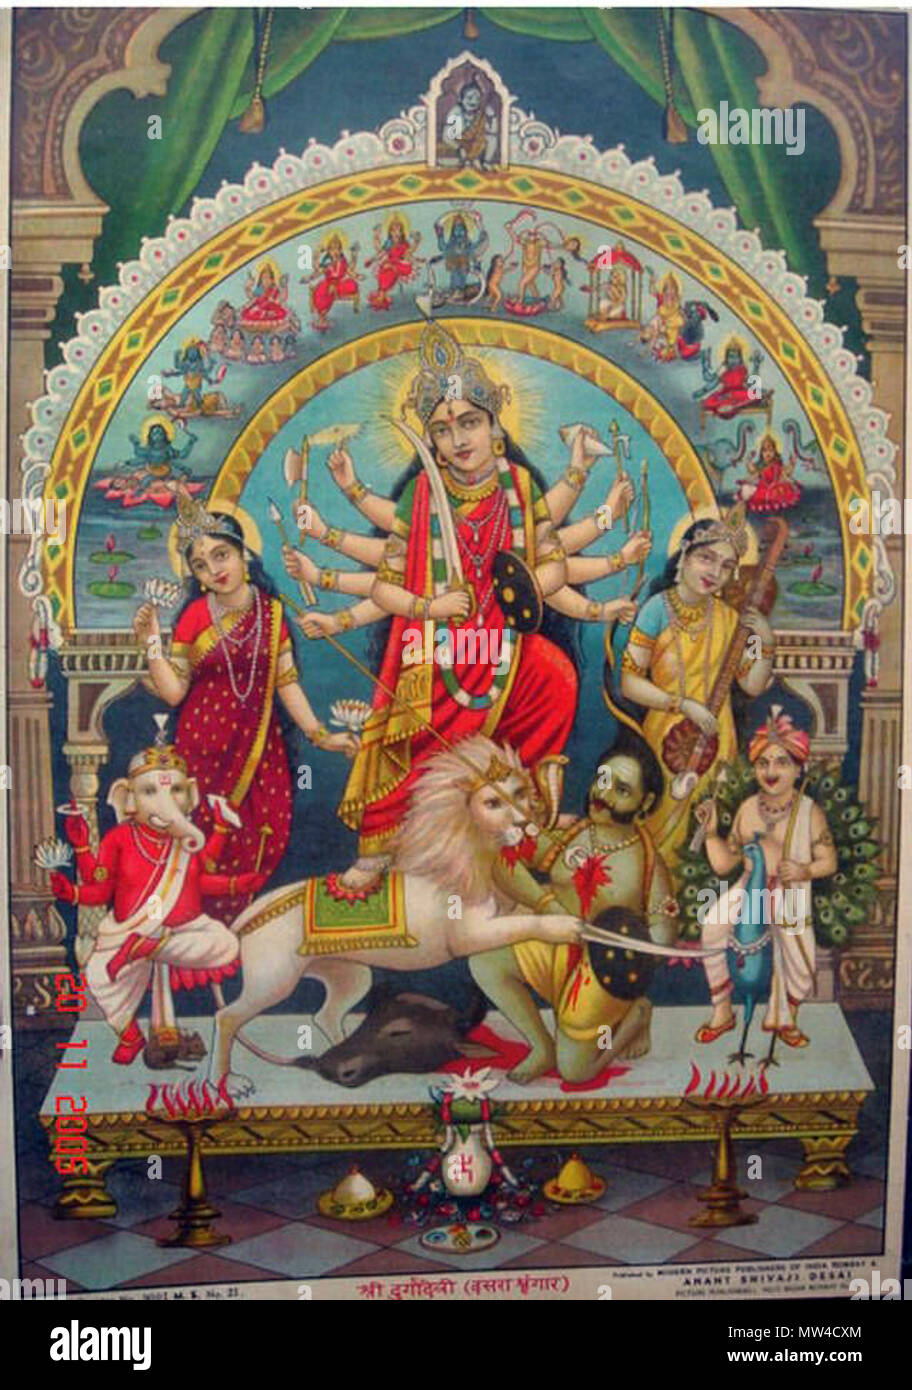 . Englisch: Ein Bild von Durga unter einem Bogen anzeigen Der Mahavidyas, mit Shiva an der Spitze; 1930 Quelle: ebay, 26.04.2006. 1930. Unbekannt 173 Durga 1930s Stockfoto